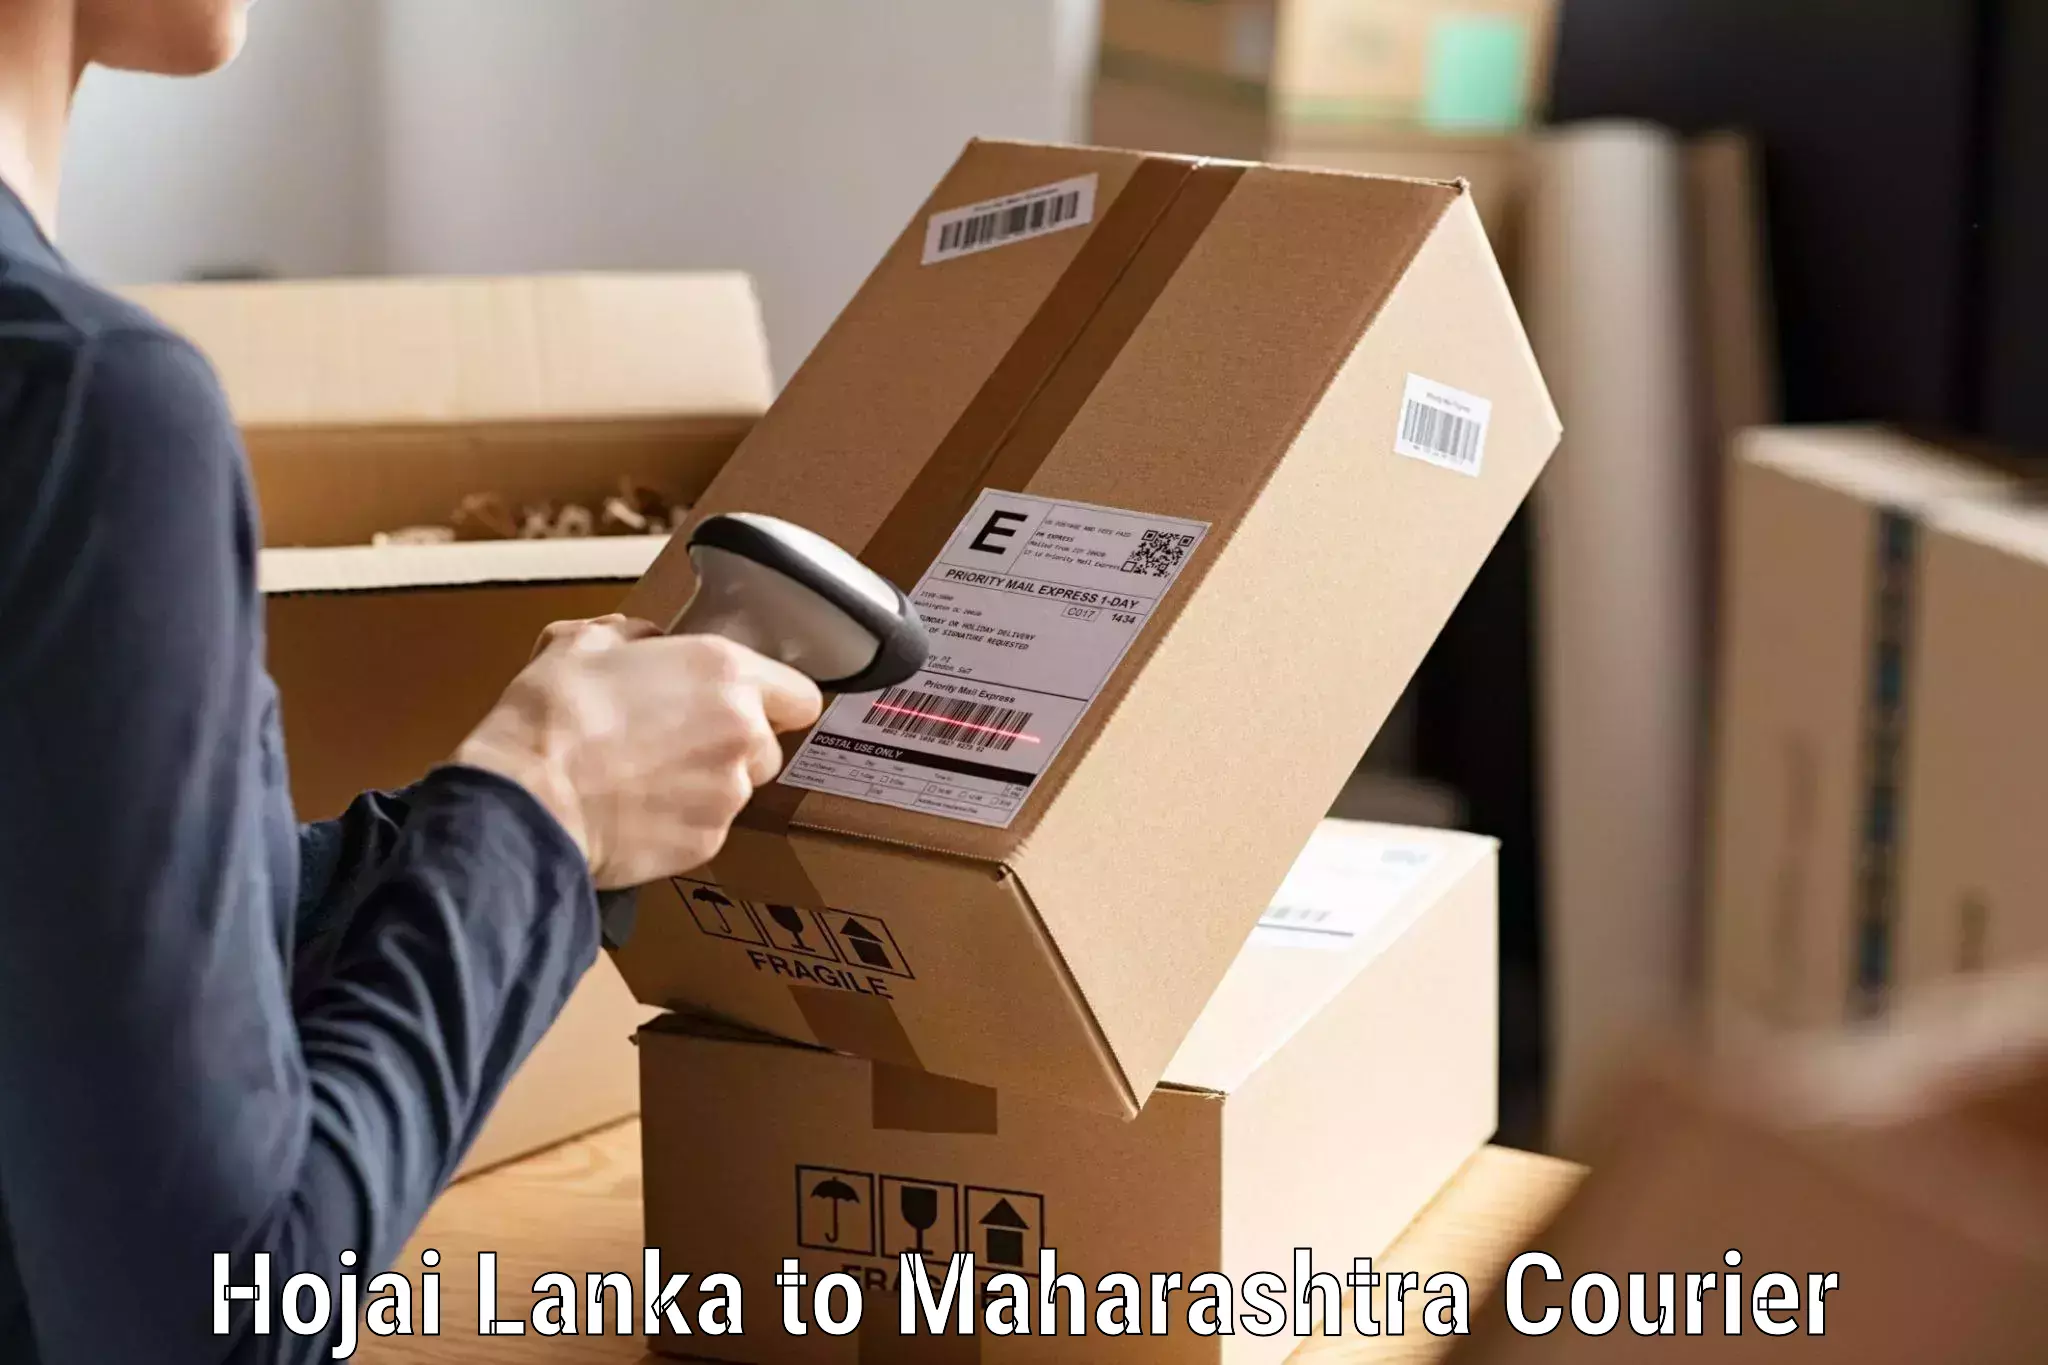 Premium courier services Hojai Lanka to Yeola